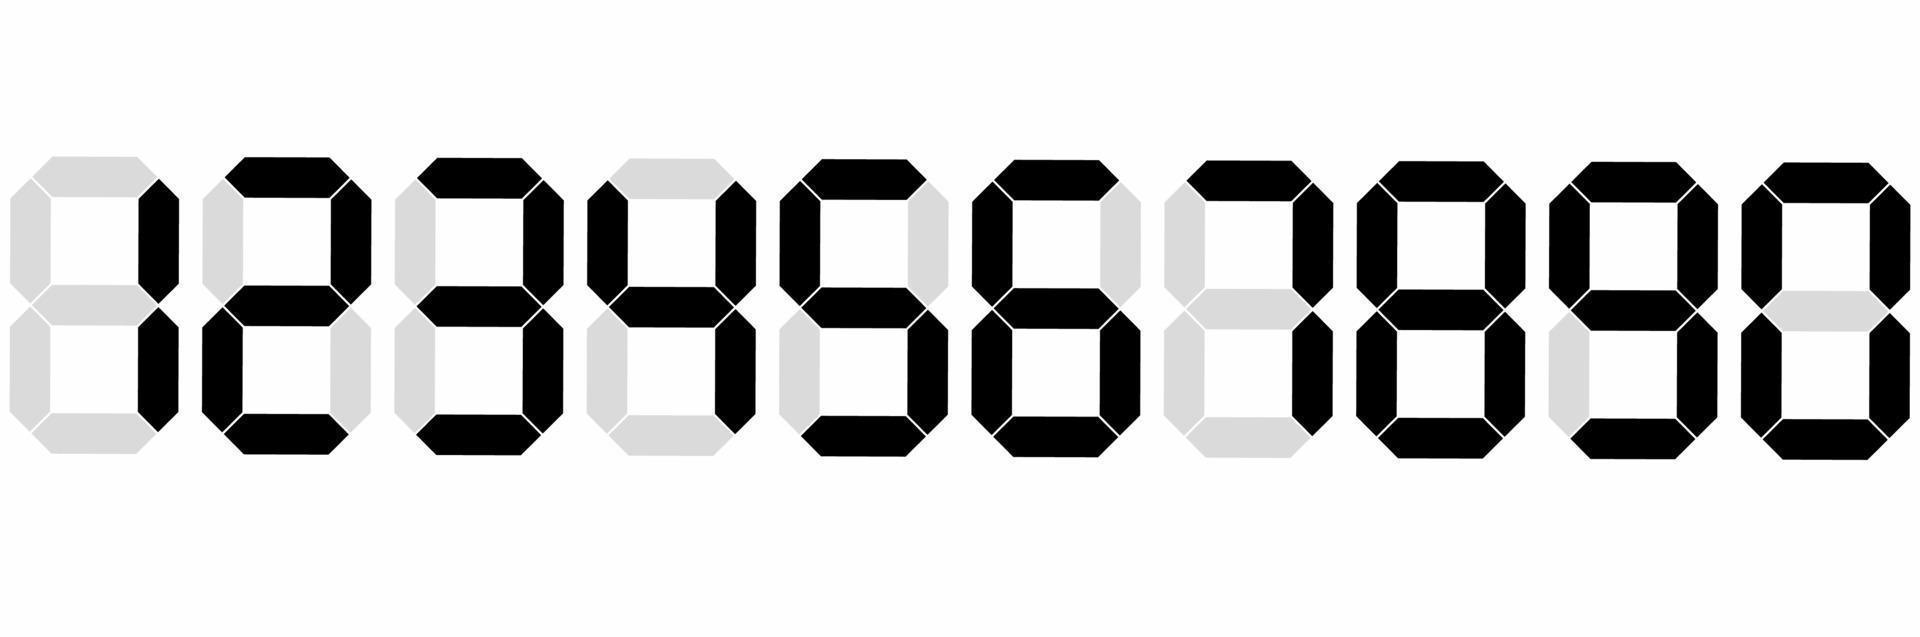 numeral digital isolado no fundo branco vetor